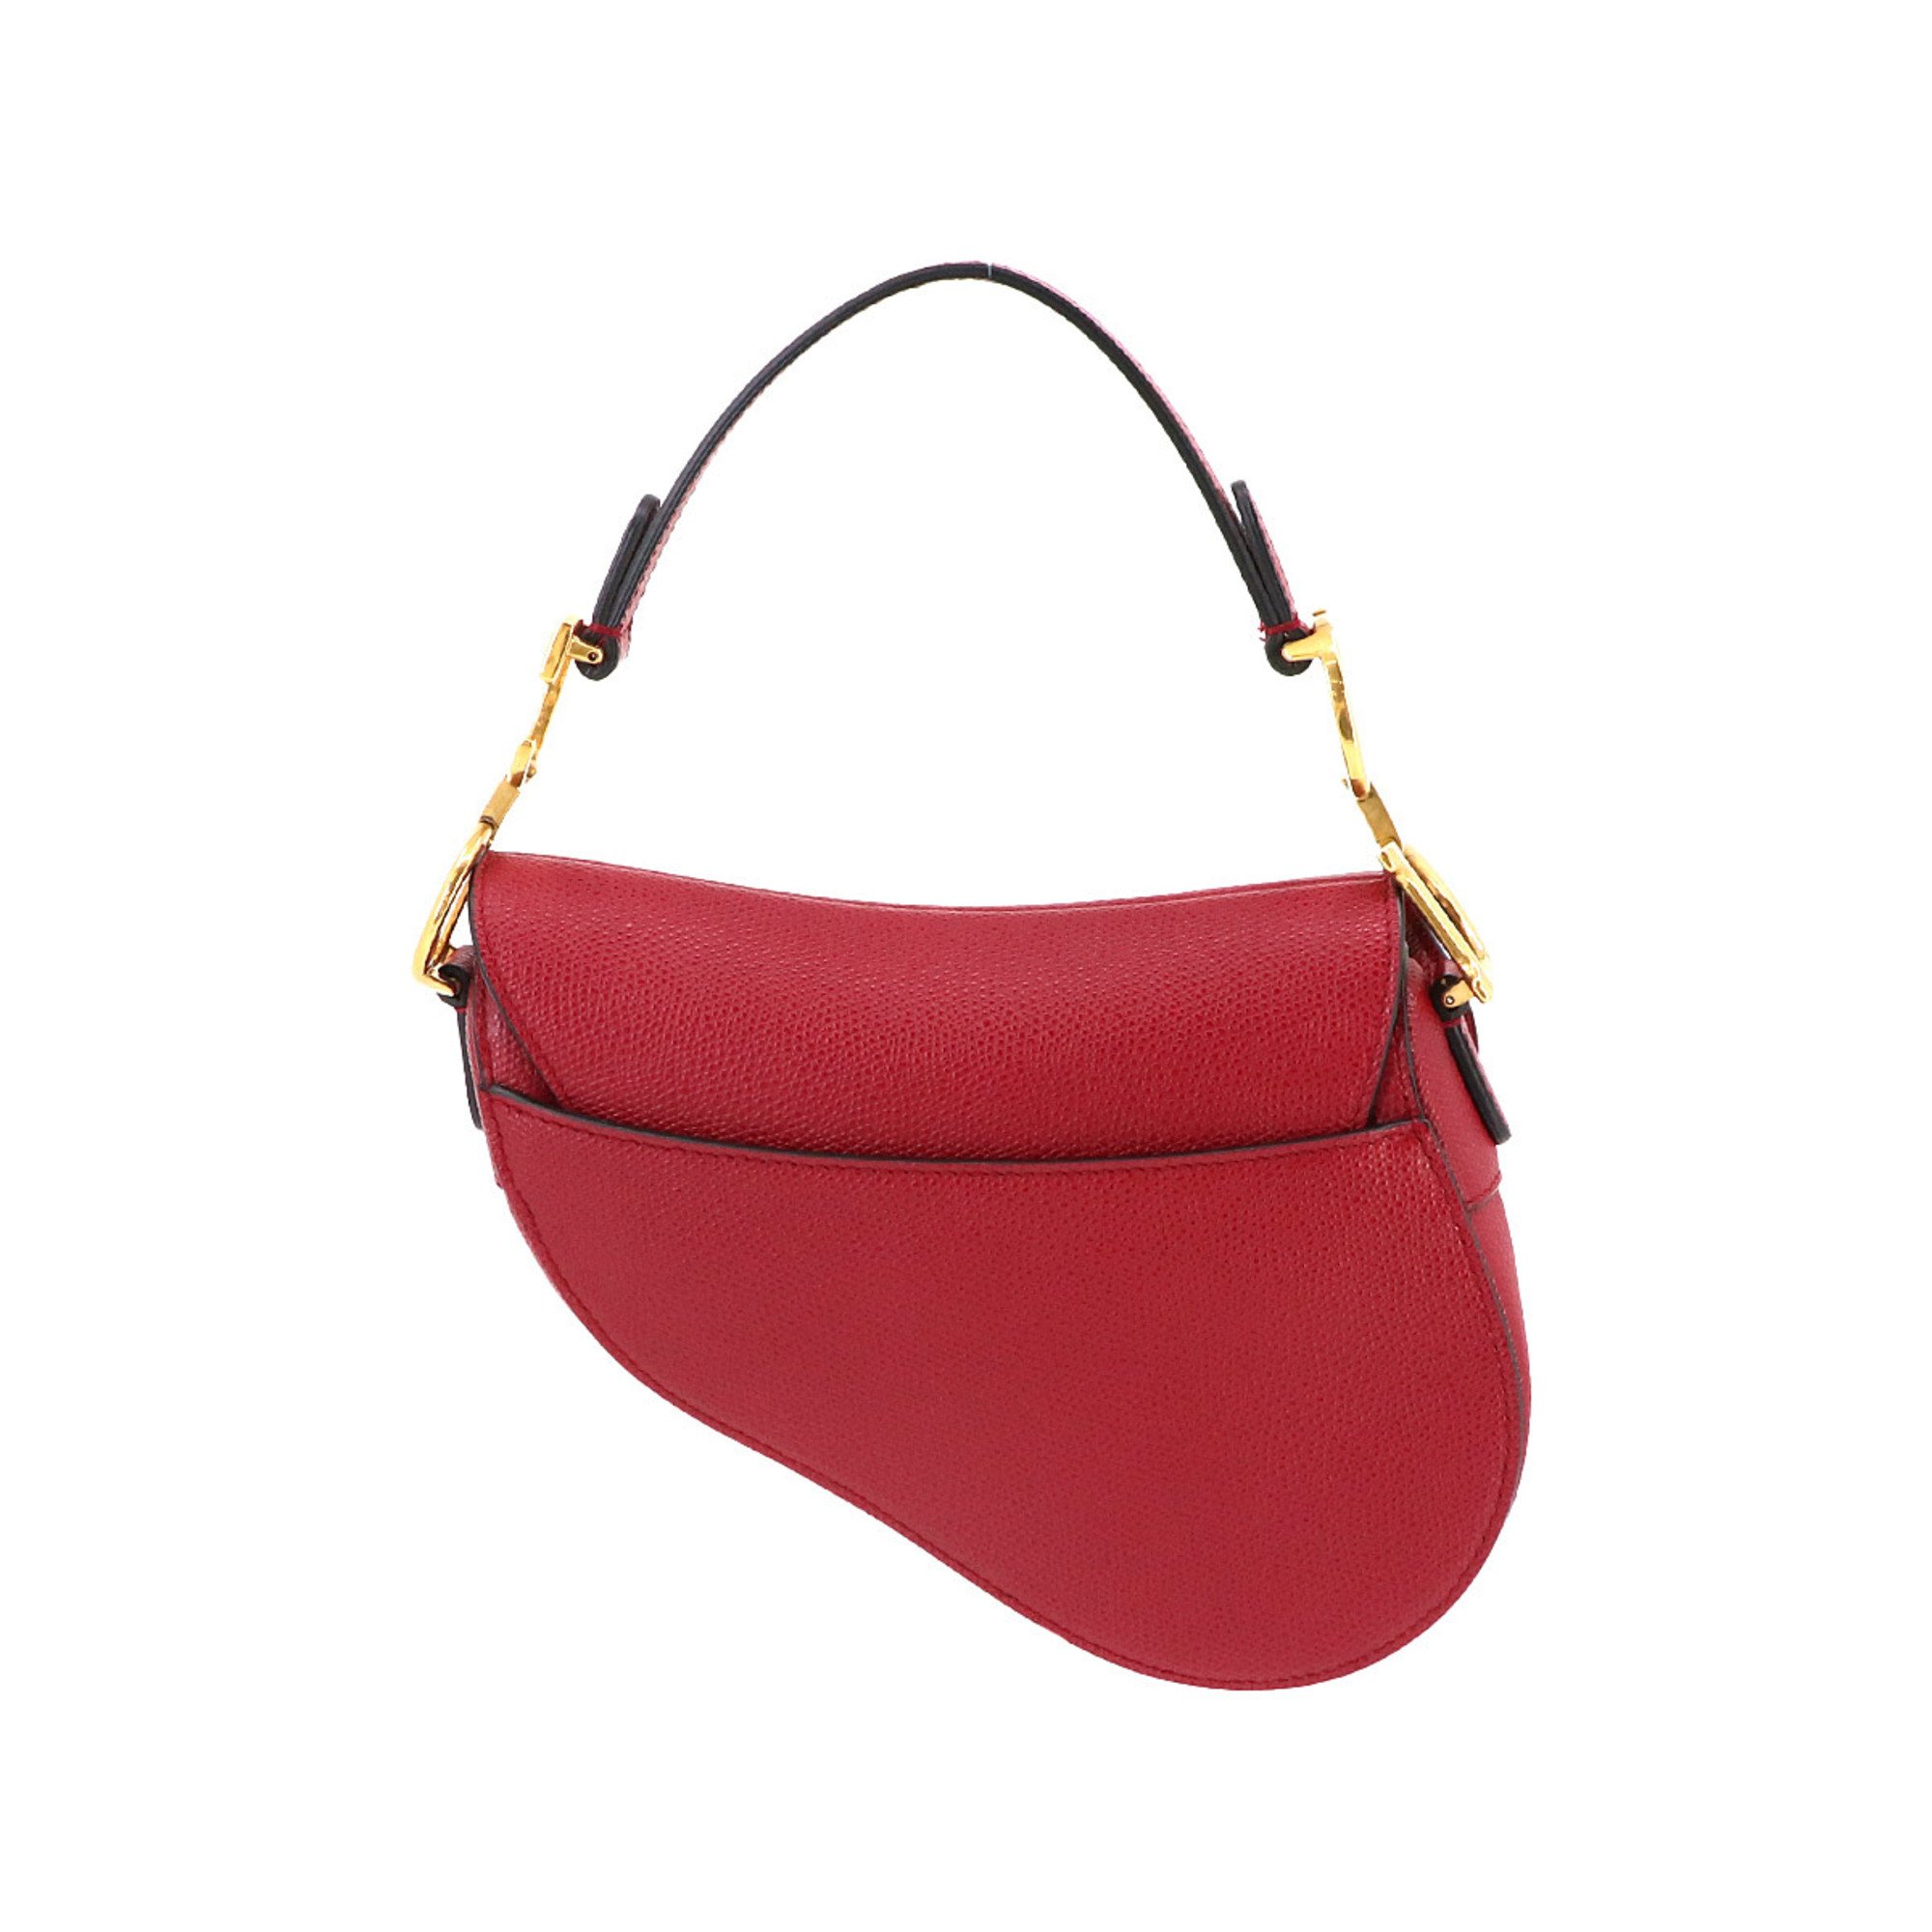 Christian Dior Saddle Handbag Leather Red Bag